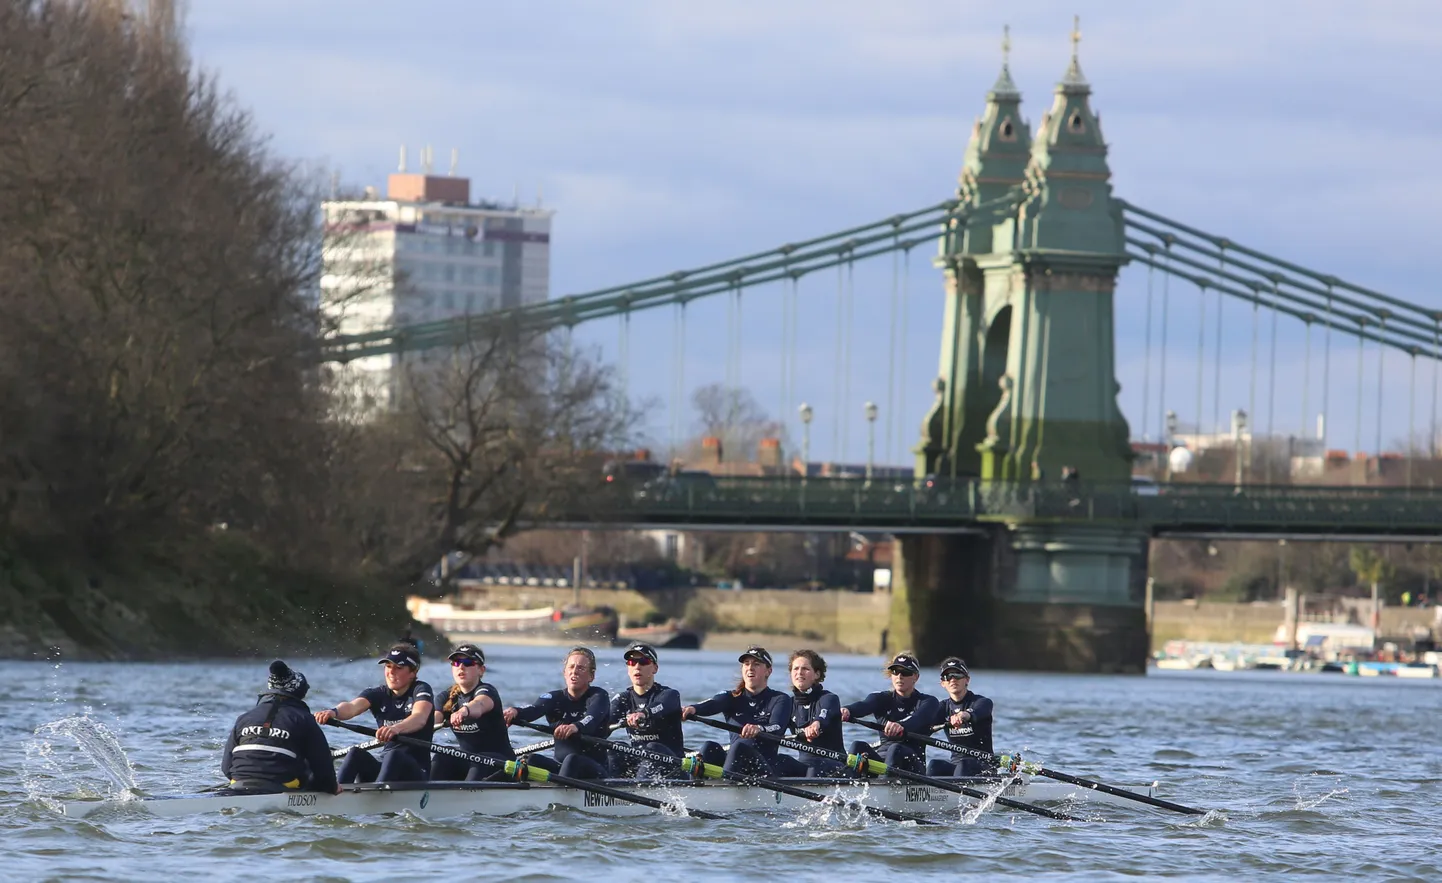 Oxfordi naiskonna kaheksapaat veebruaris Thamesi jõel peetud võistlusel Molesey vastu. Elo Luik eestpoolt viies.